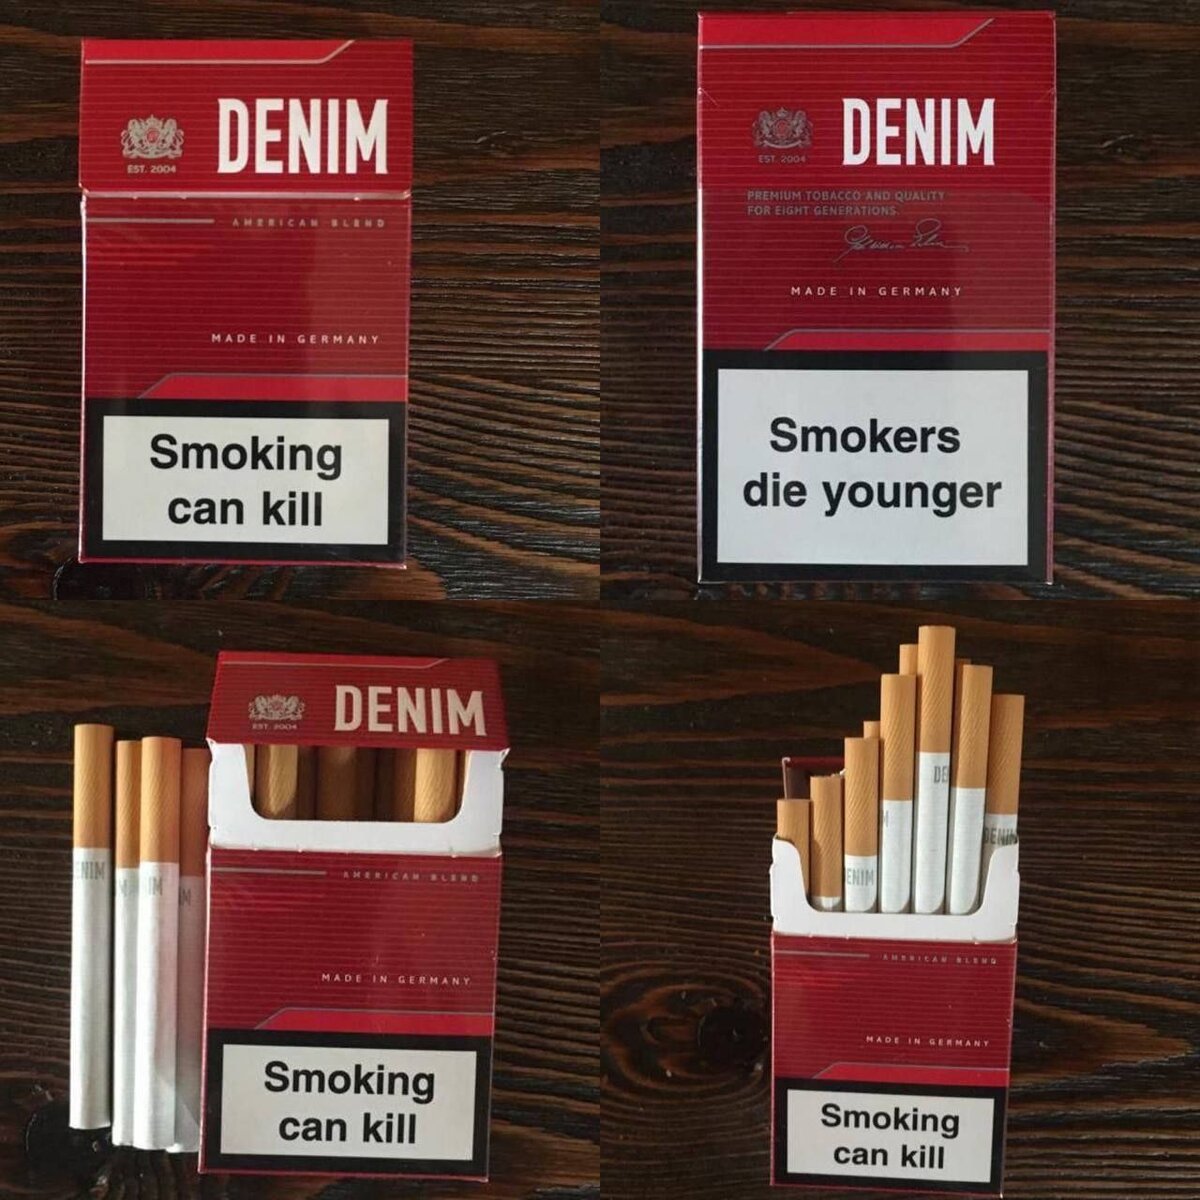 Недорогие сигареты спб купить. Популярные сигареты. Сигареты Denim. Недорогие сигареты. Сигареты на рынке.